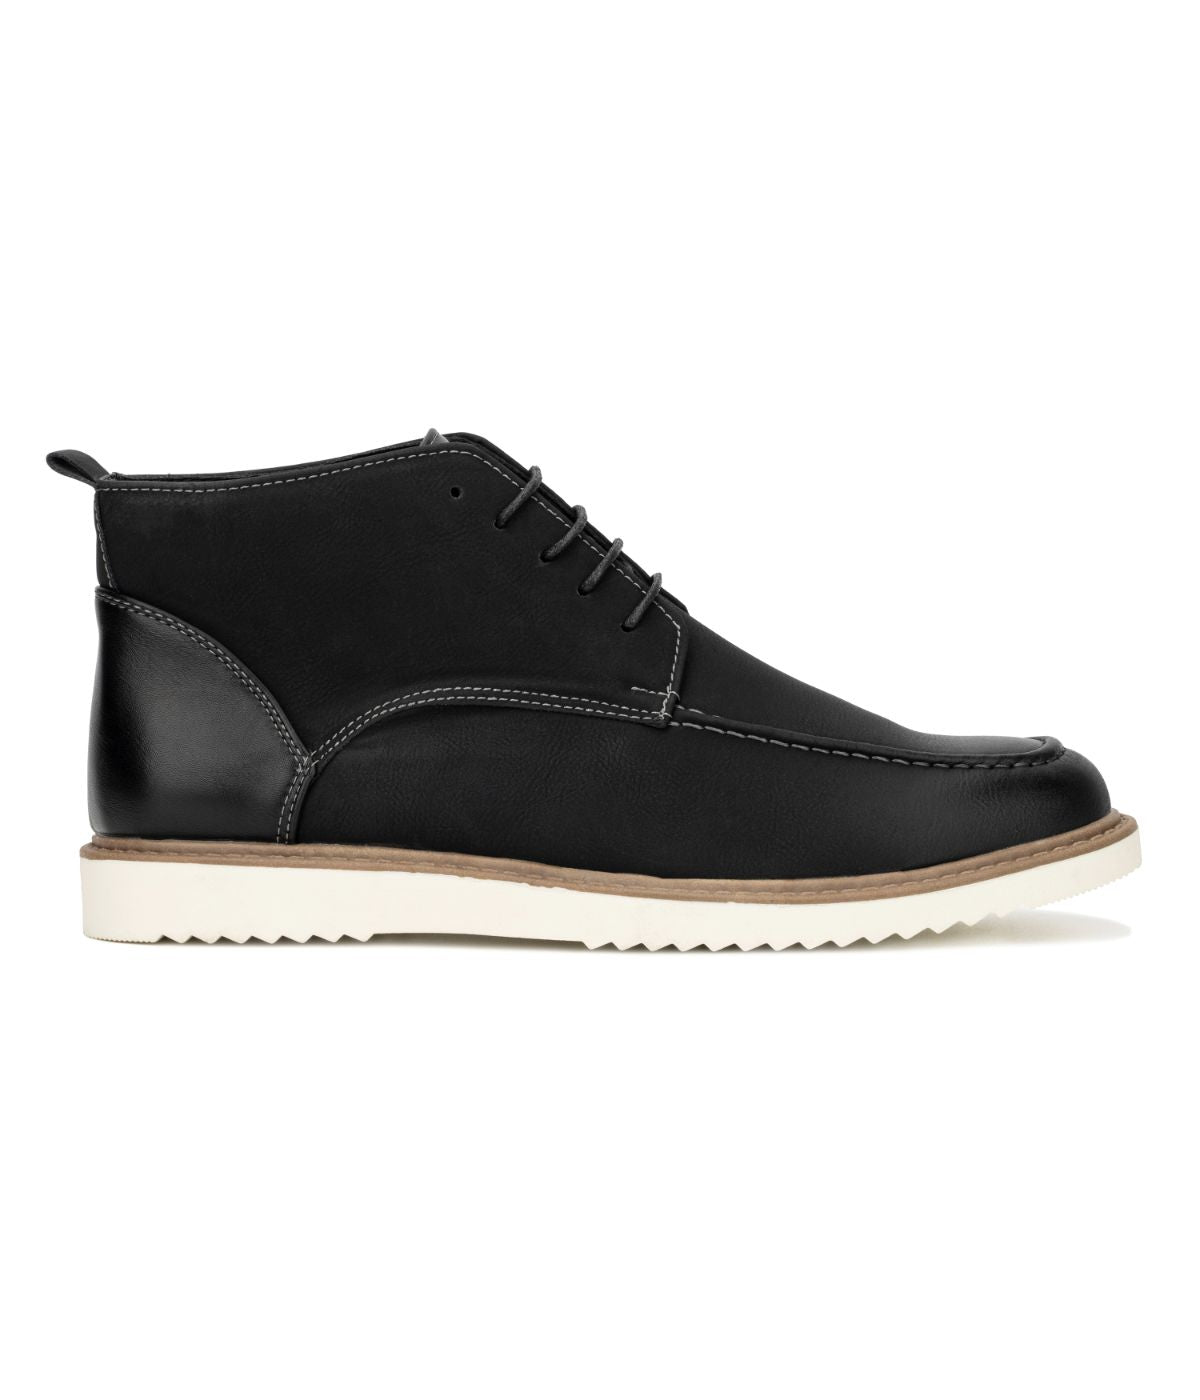 New York & Company Men's Hurley Chukka Boot Black